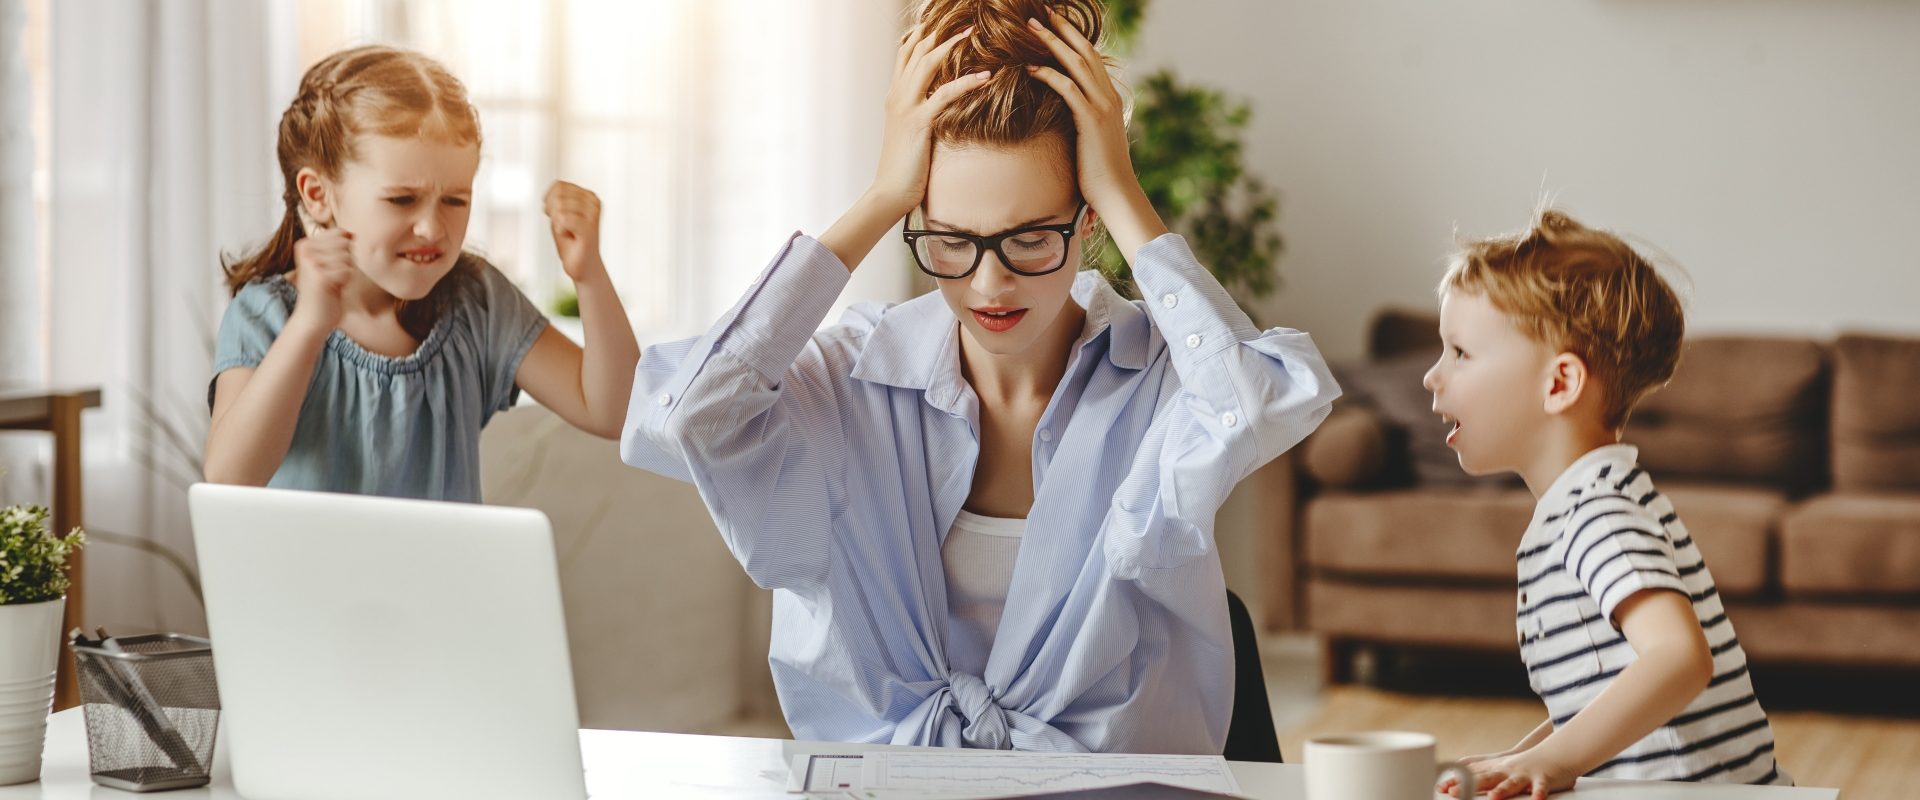 Jak radzić sobie ze stresem w XXI wieku? Zestresowana kobieta łapie się za głowę, siedząc przy laptopie, podczas gdy jej dzieci nie dają jej pracować.